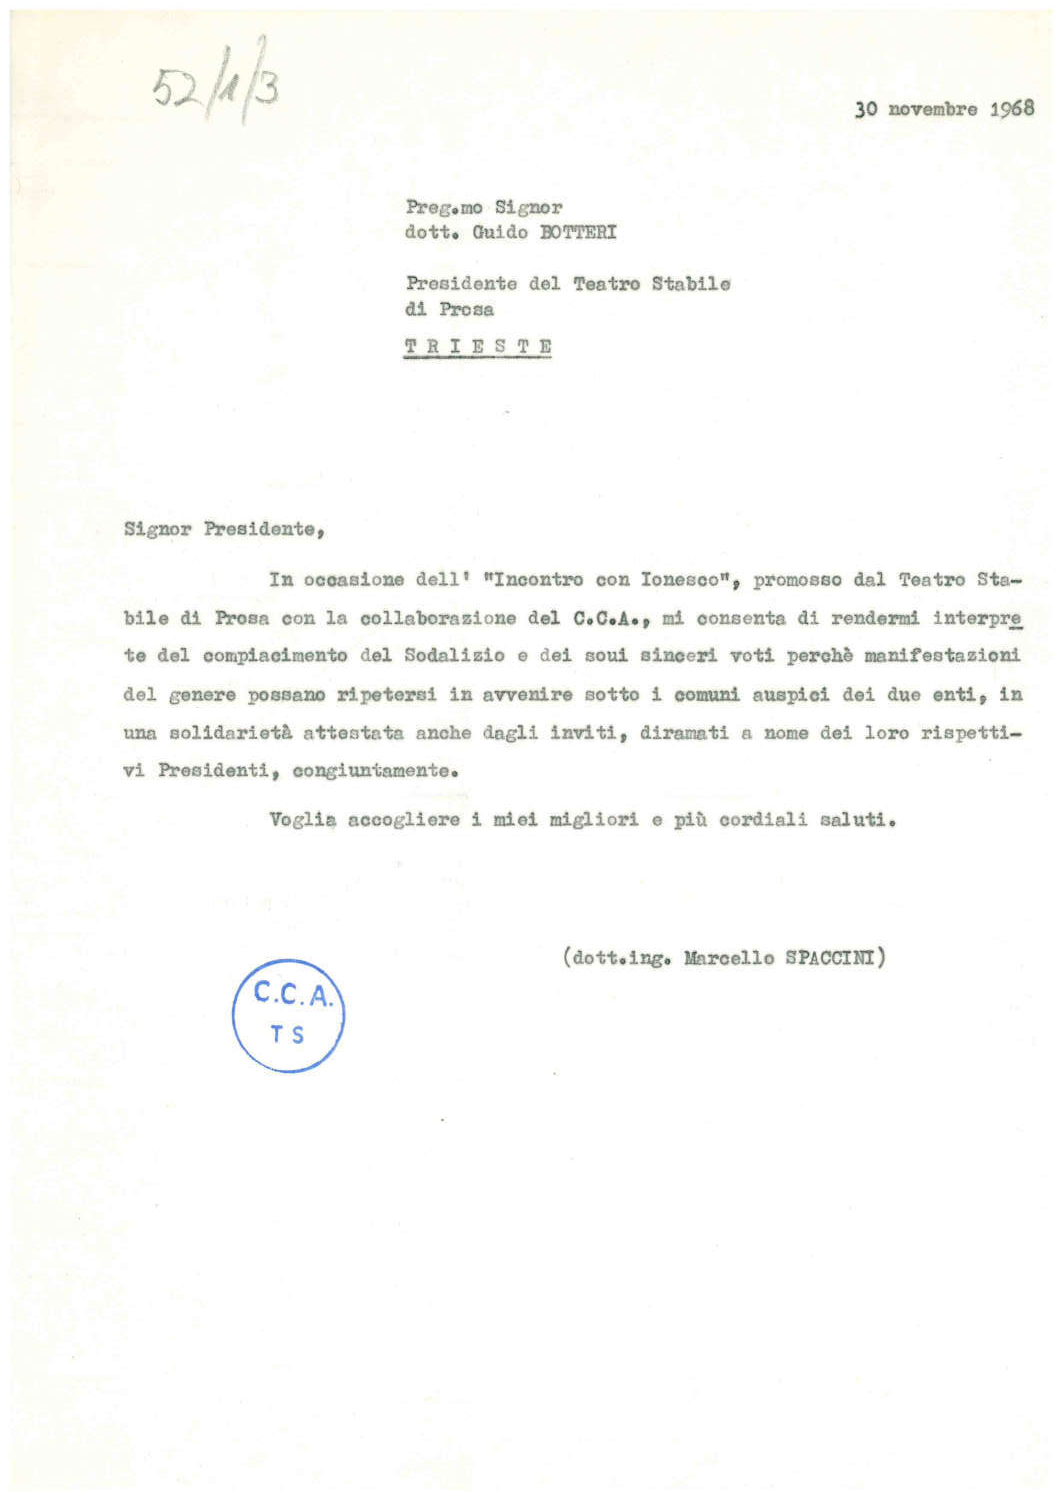 1968 11 30 Collaborazione Incontro con Ionesco